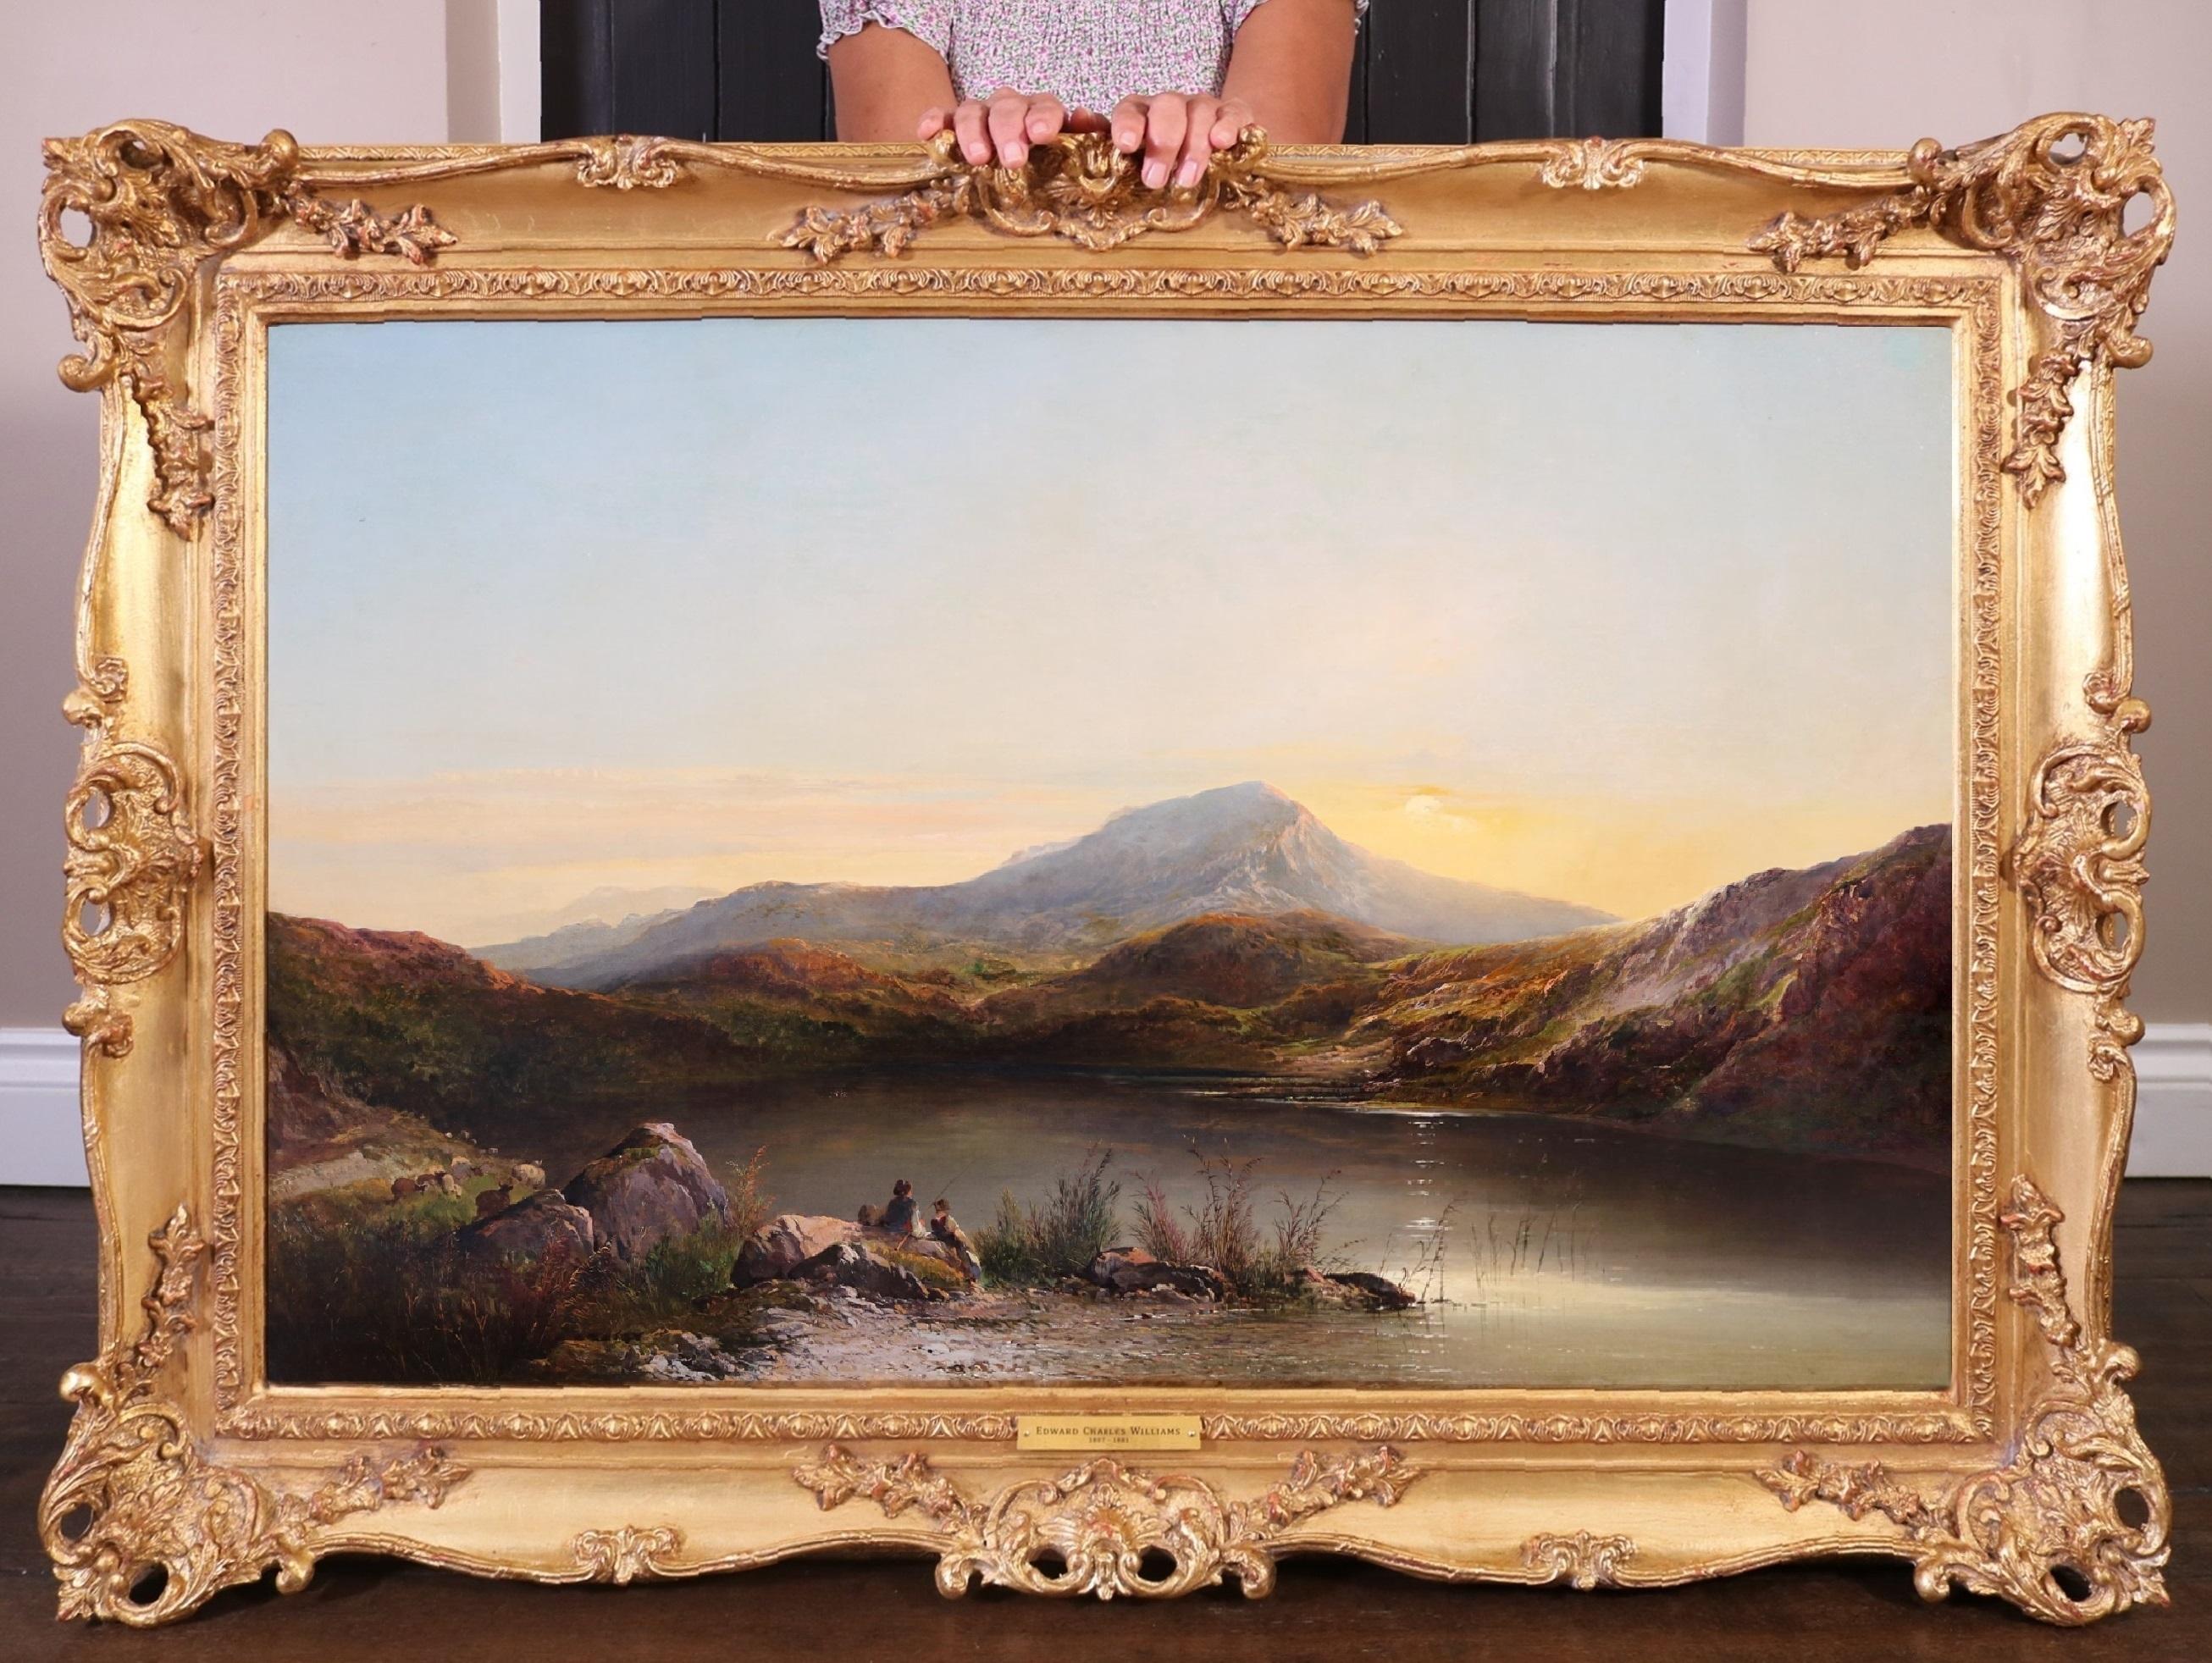 Mount Snowdon - Royal Academy, Ölgemälde, Welsh Mountain Landscape, 19. Jahrhundert, Royal Academy